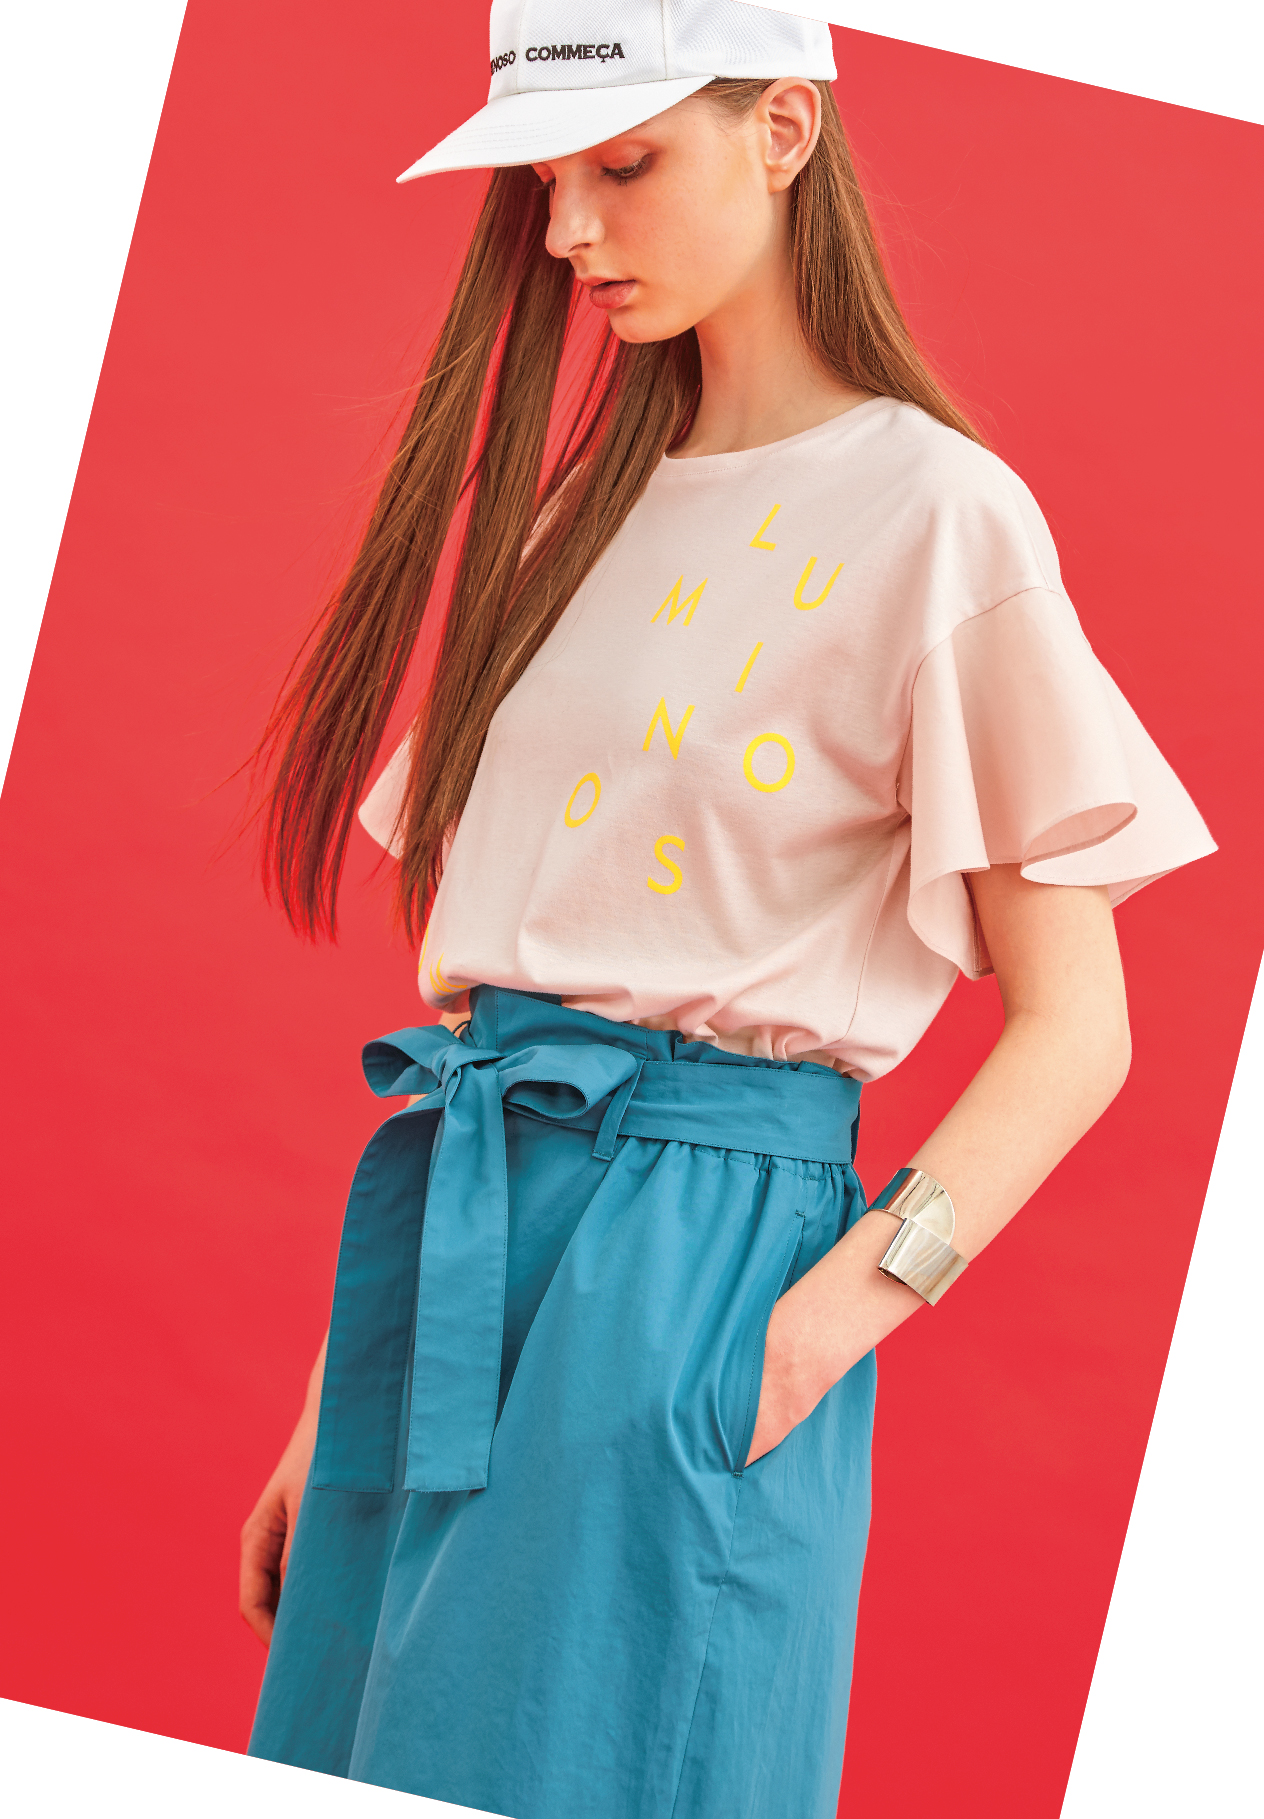 2017年春夏は90年代ファッションが注目の的。ルミノーゾ・コムサから大胆ロゴプリントTシャツが登場。｜株式会社ファイブフォックスのプレスリリース